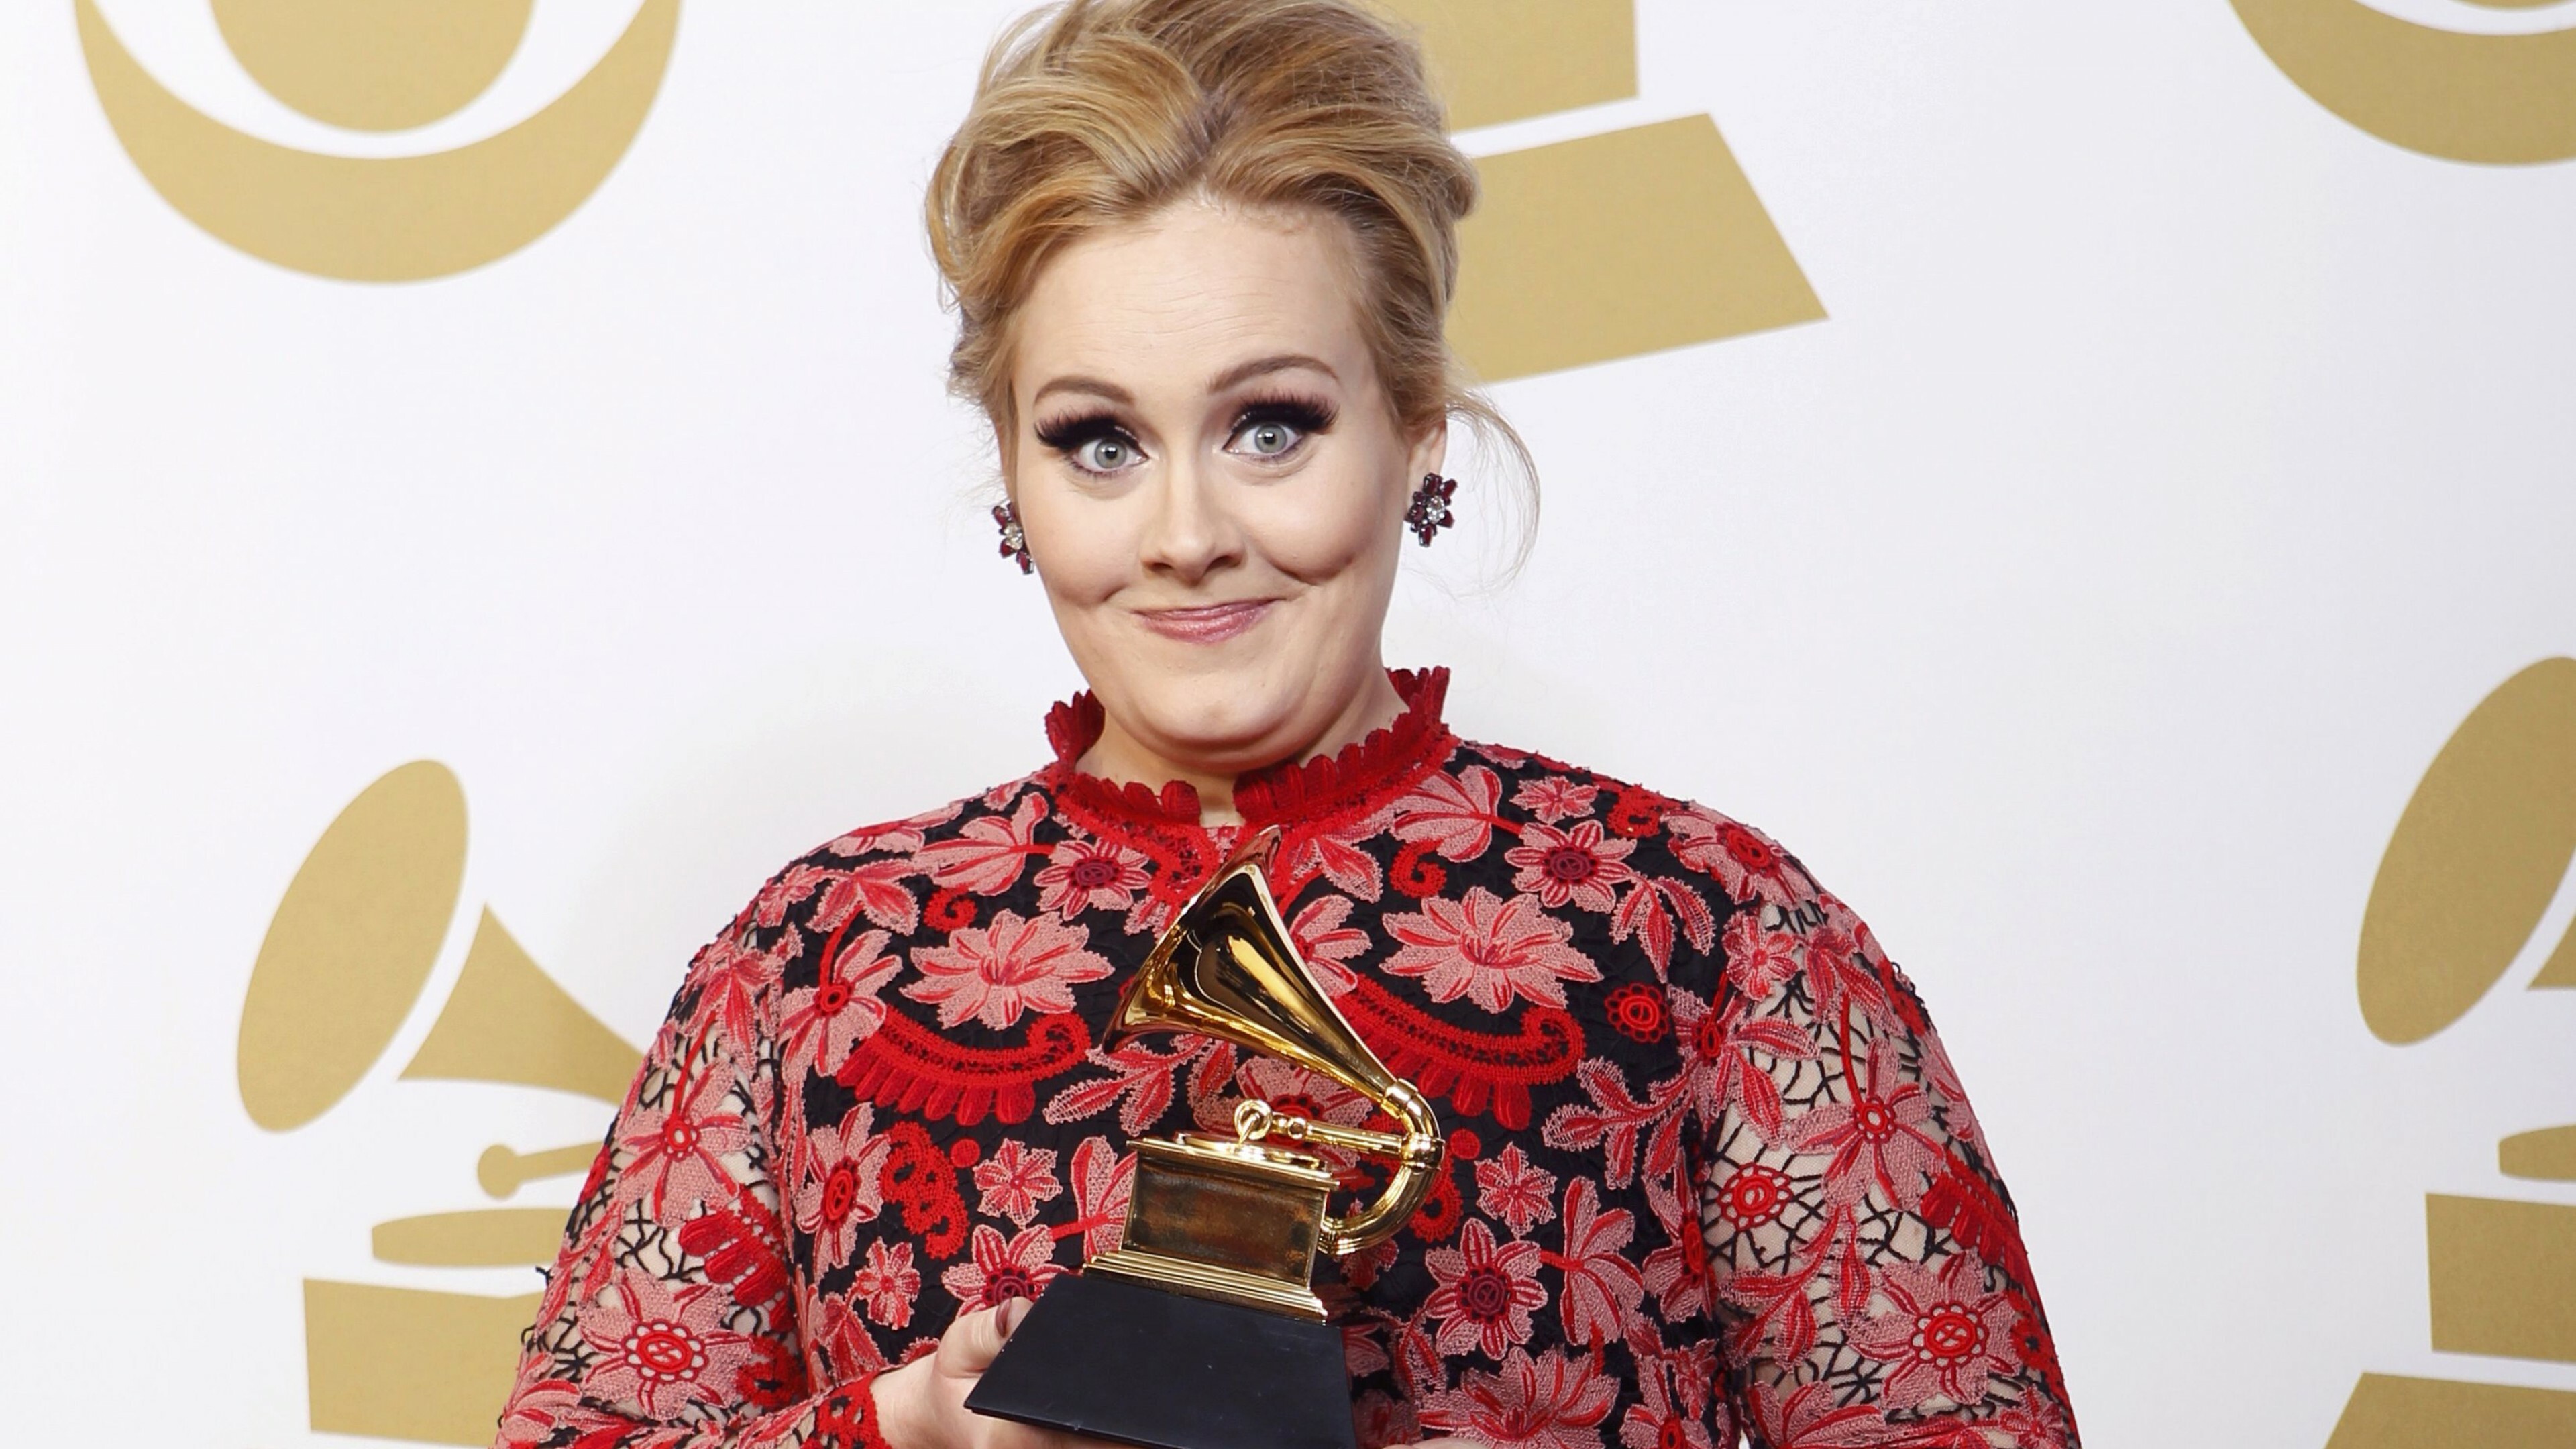 Adele, Best celebrity singer, Singer-songwriter, Grammys 2015, 3840x2160 4K Desktop